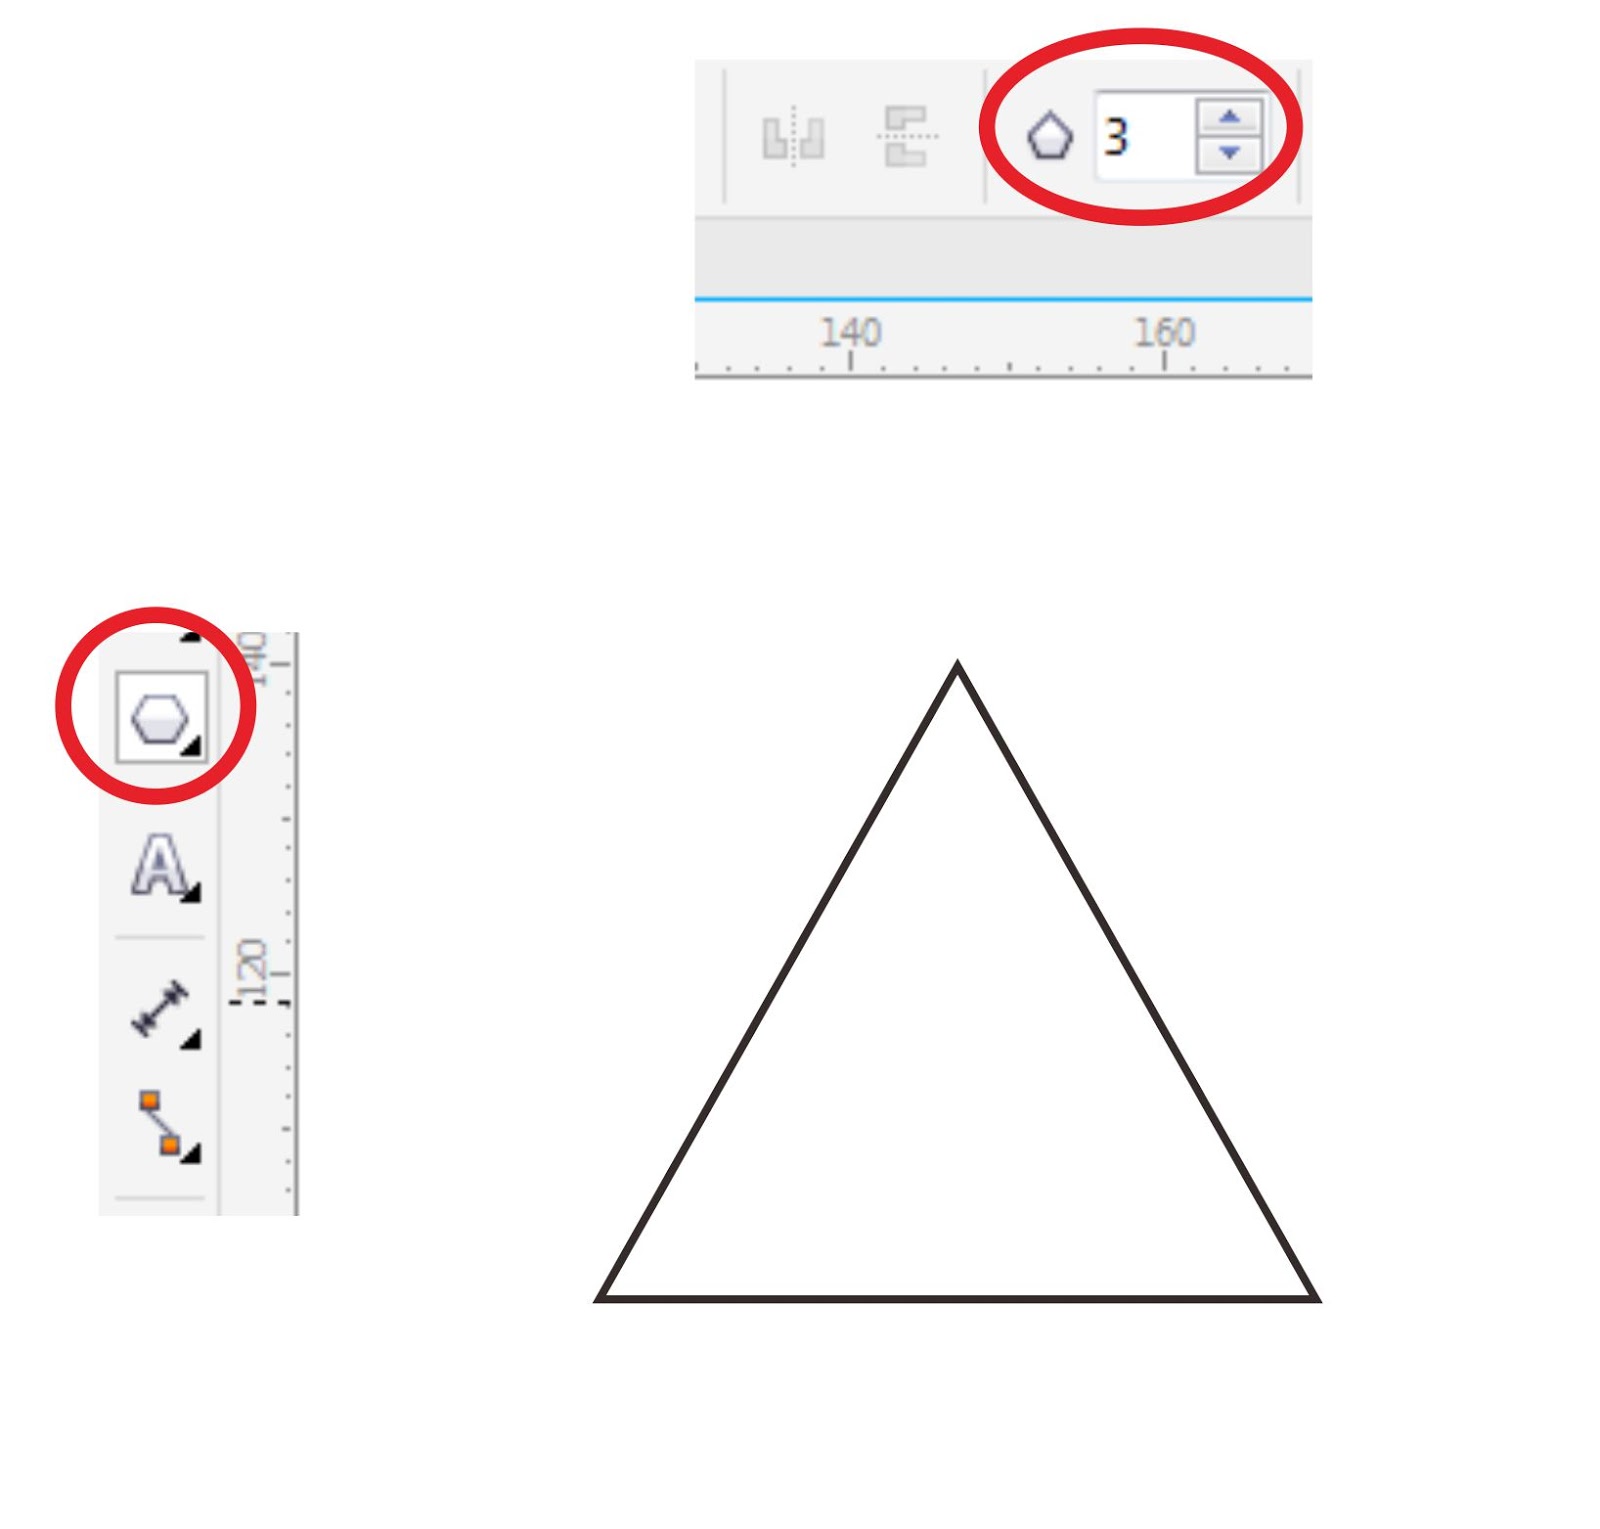 Langkah ke 1 Dengan munggunakan Polygon Tool pada Tool Box kemudian membuat gambar segitiga sejumlah 3